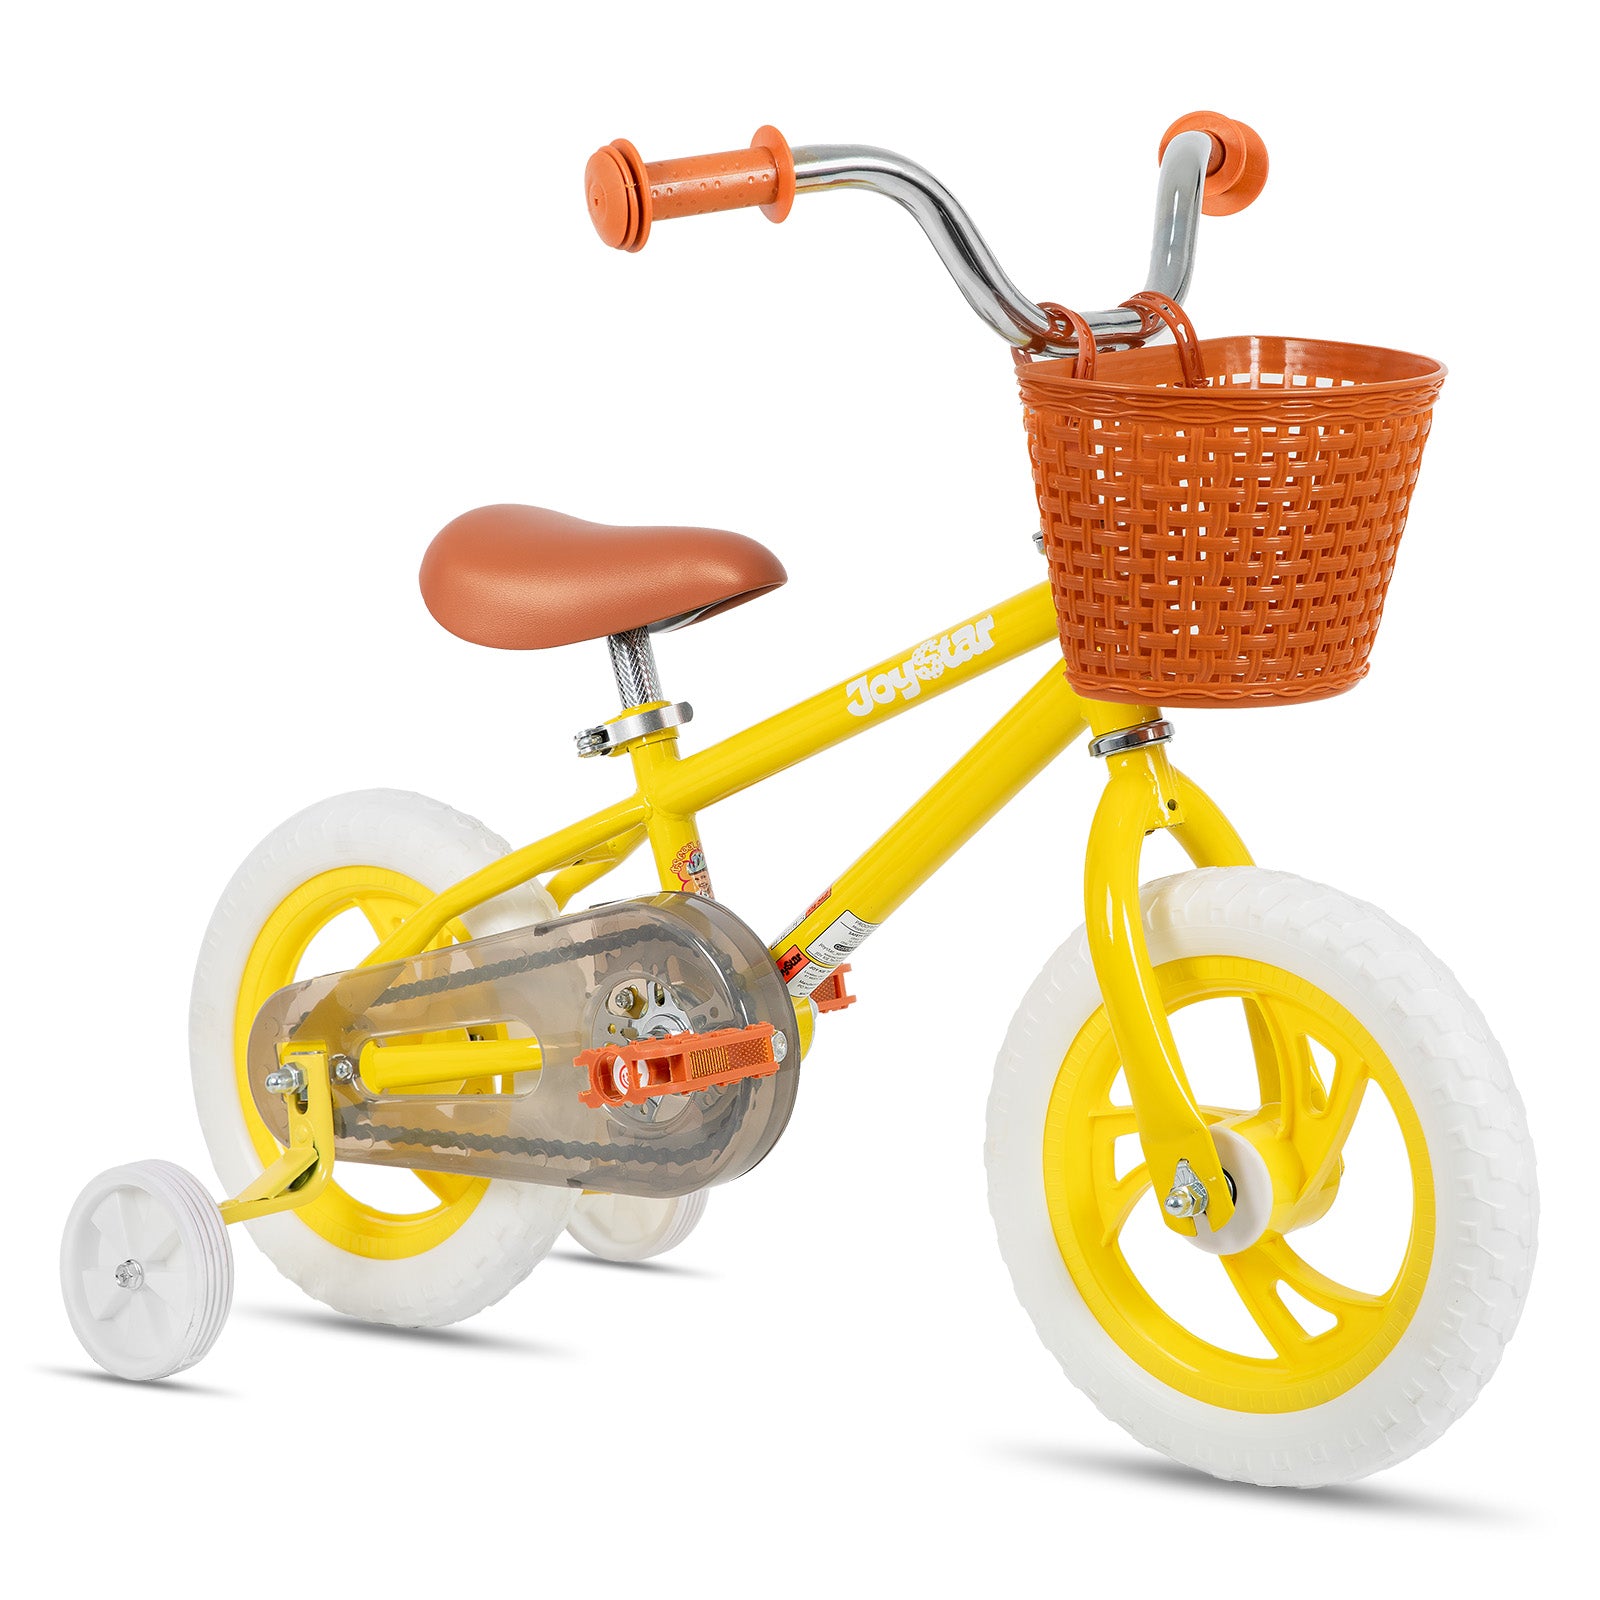 JOYSTAR Starlet Kids Bike for 2-7 yrs Girls & Boys